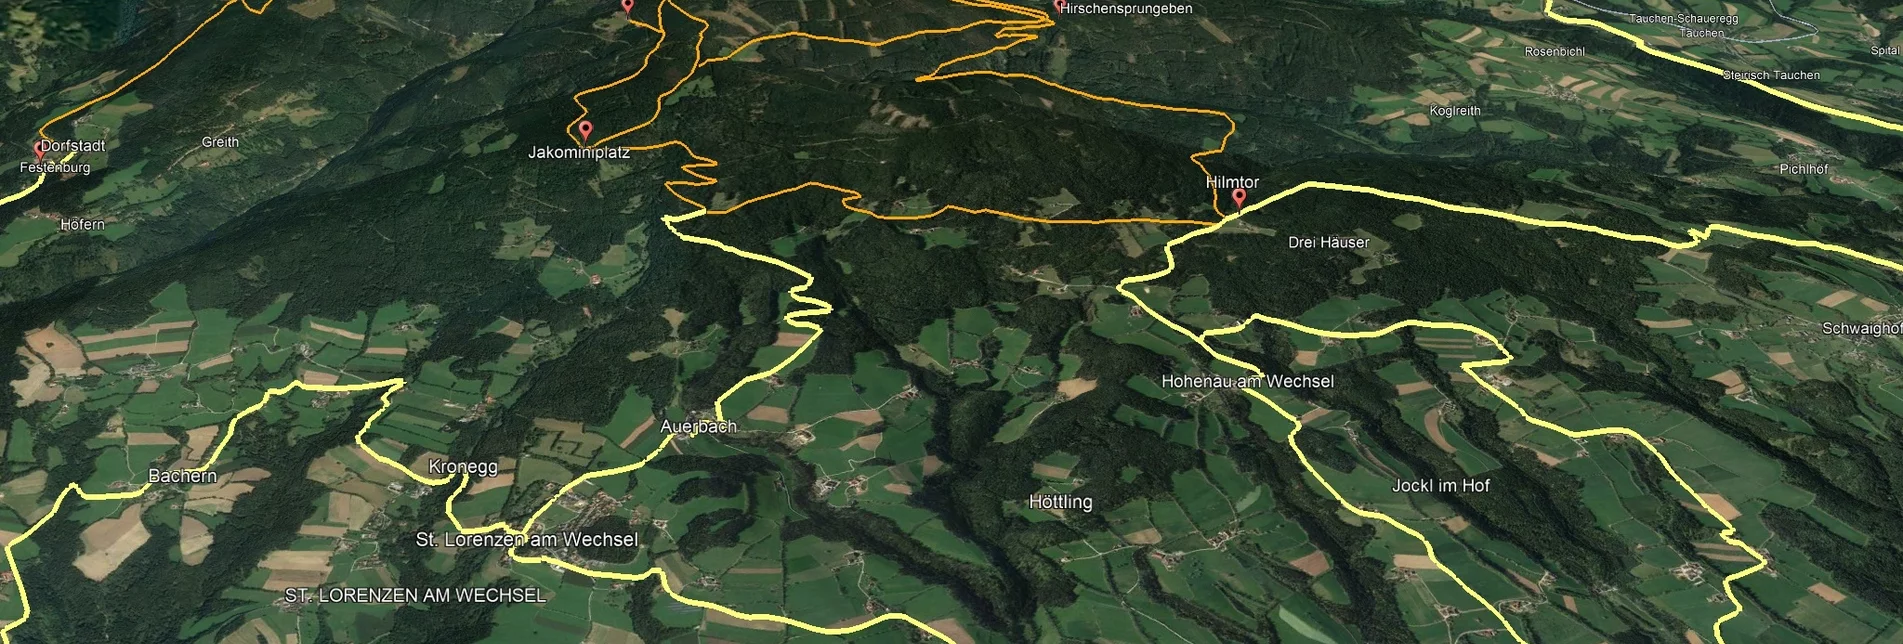 Mountainbike VORSCHAU Steirische Wexl Trails - Zubringer Thalberg nach St. Lorenzen am Wechsel (Anbindung) - Touren-Impression #1 | © Verein Tourismusentwicklung Steirischer Wechsel